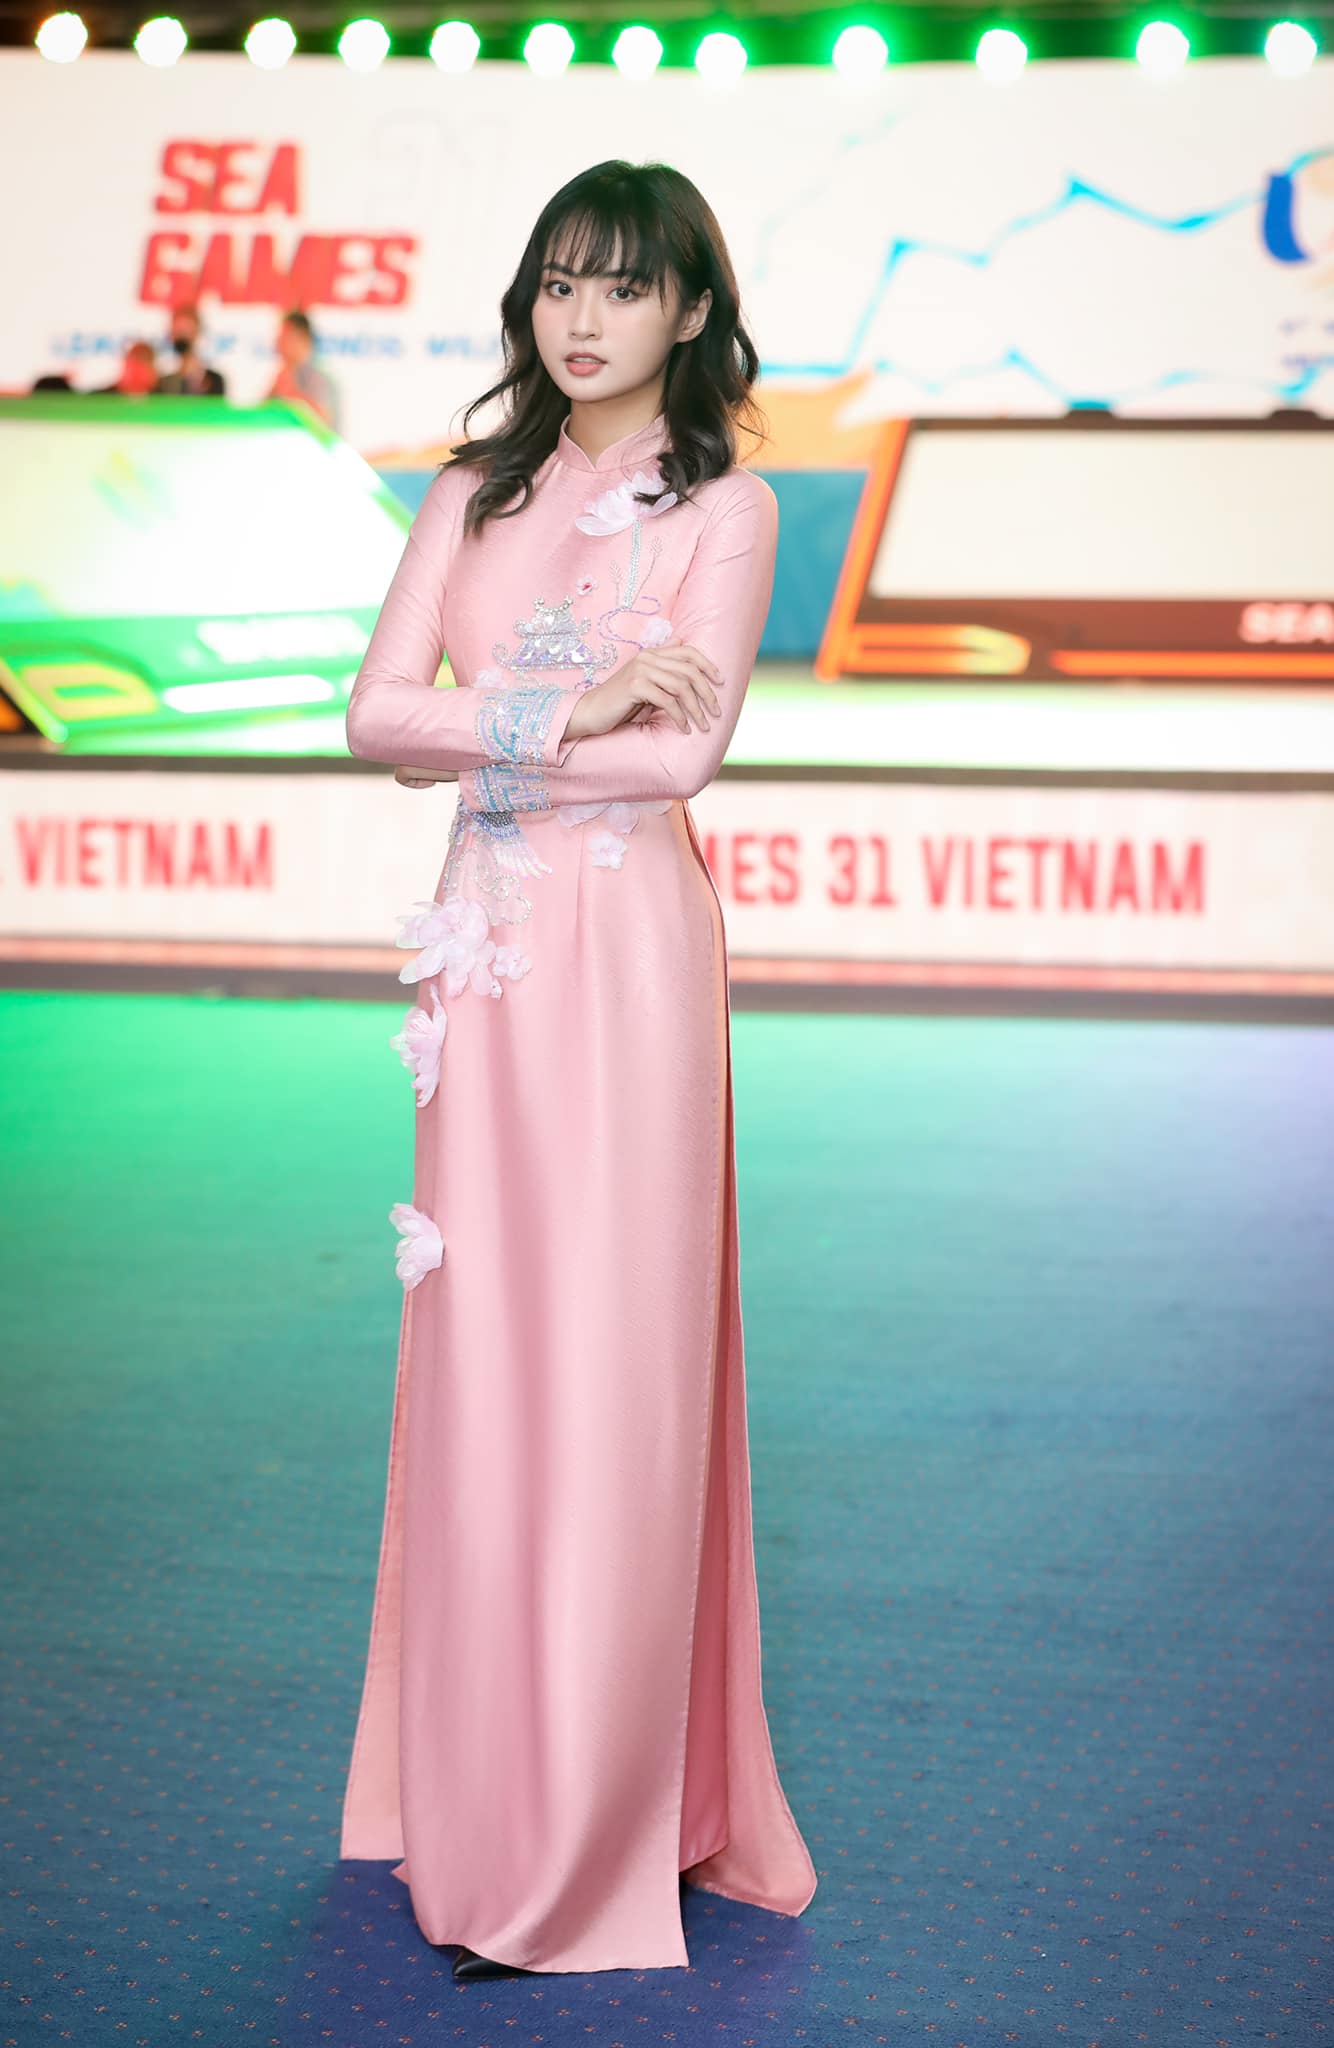 Nhan sắc xinh đẹp của MC Minh Nghi chiếm spotlight giải đấu Esport tại SEA Games 31 - Ảnh 7